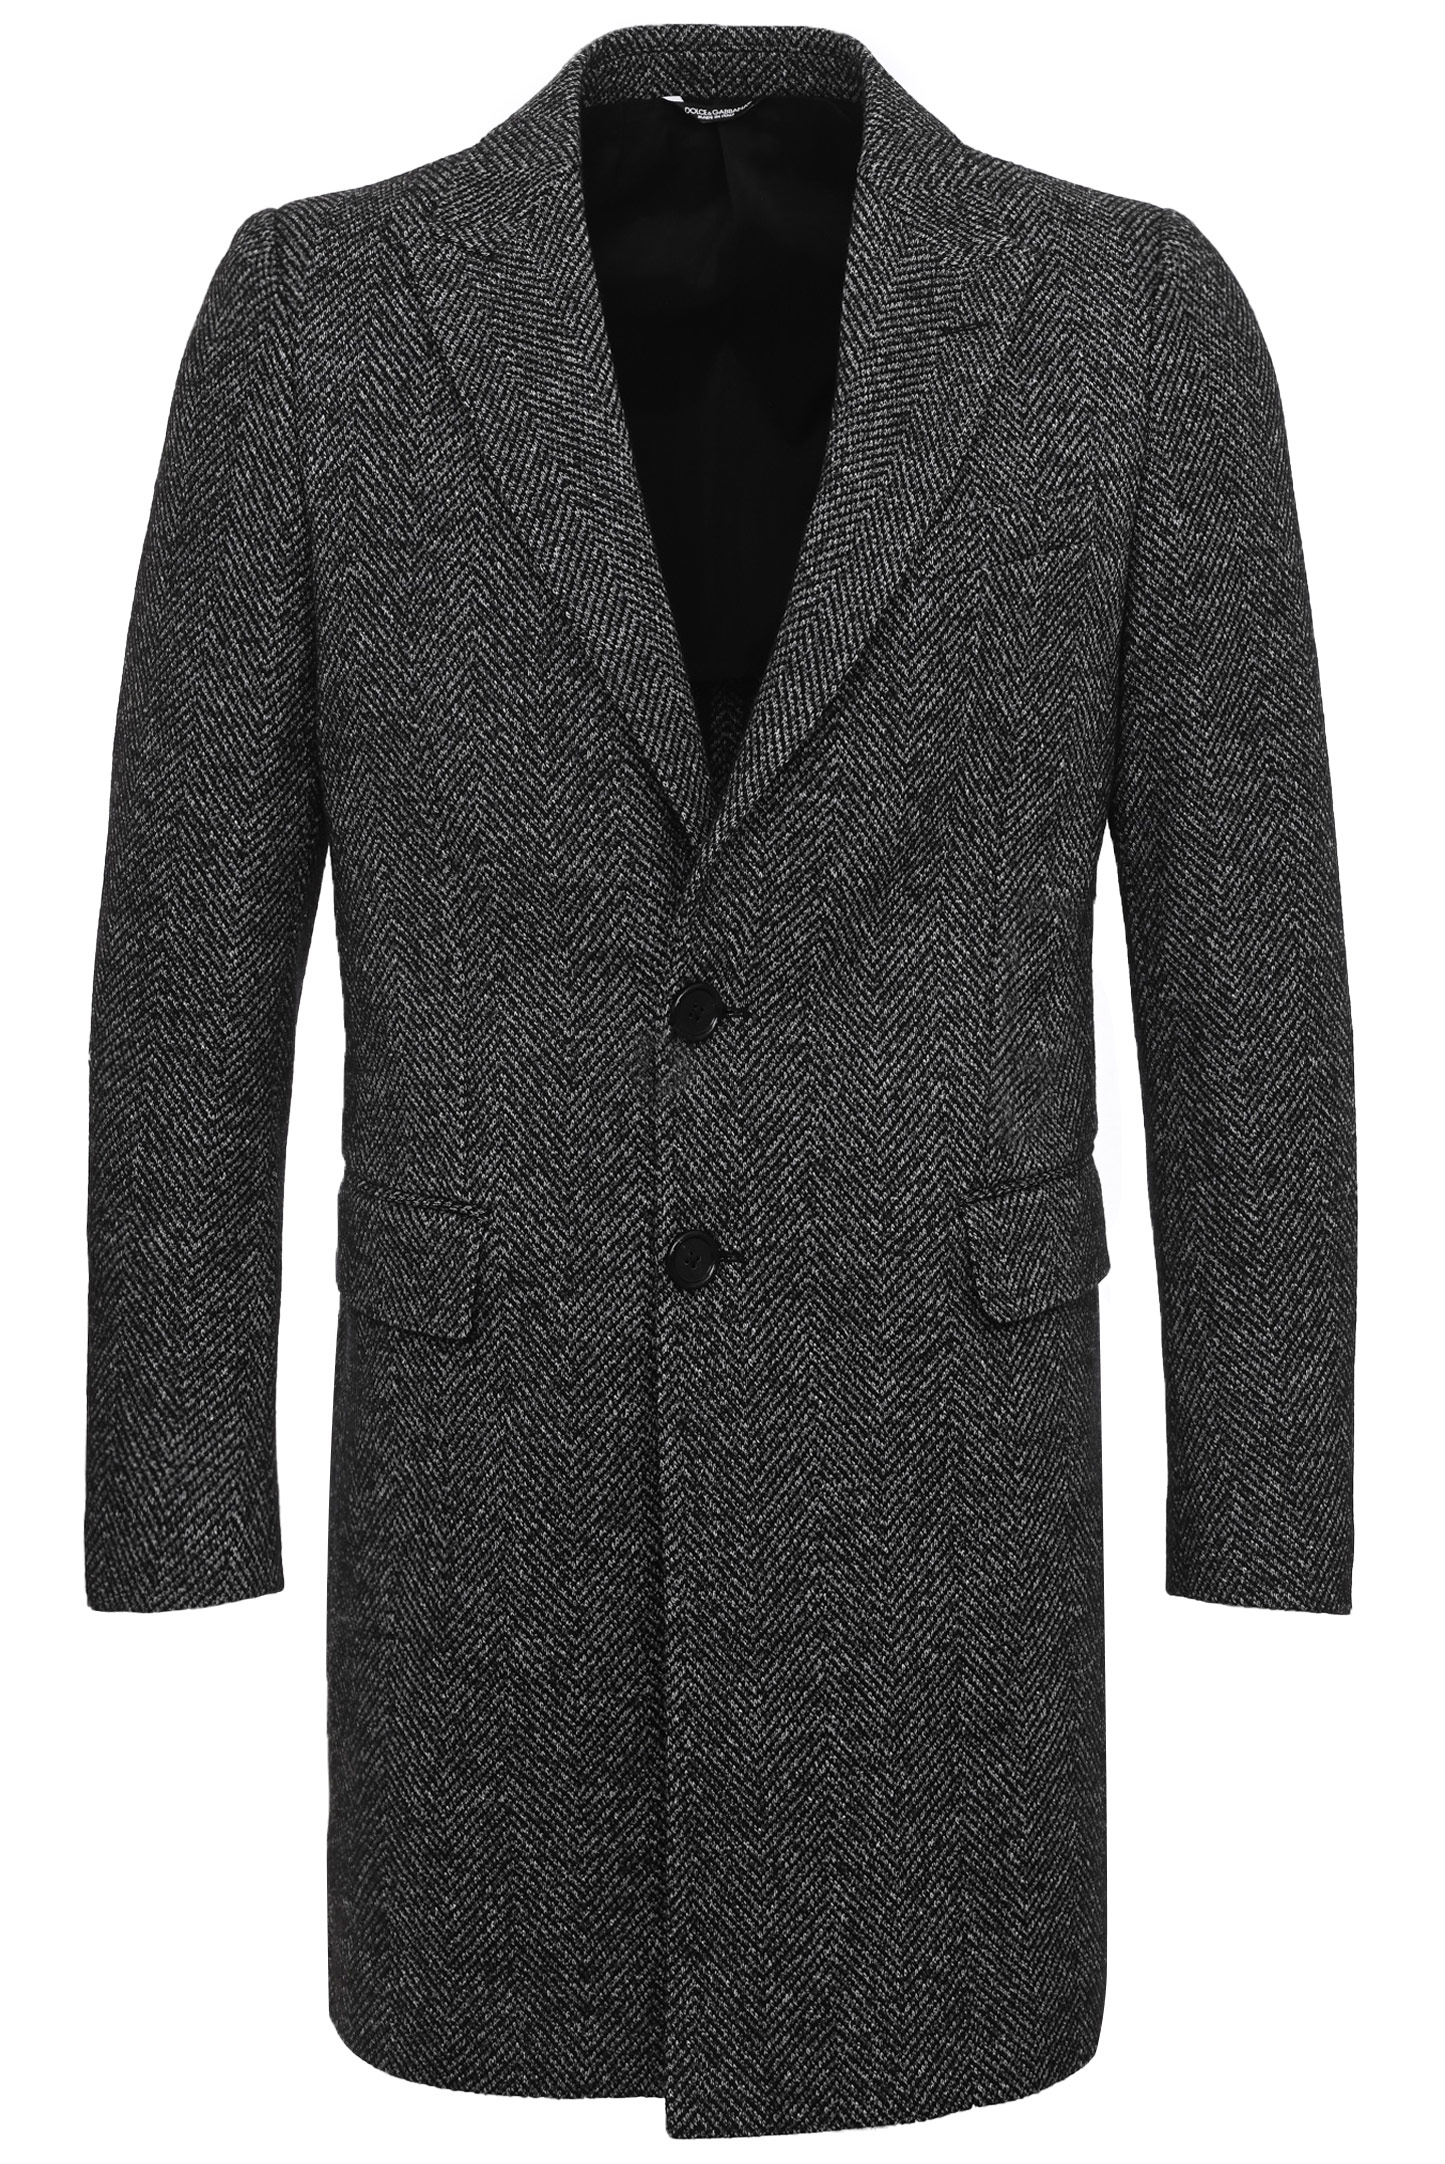 Пальто DOLCE & GABBANA G023OT FC7AQ, цвет: Черный, Мужской